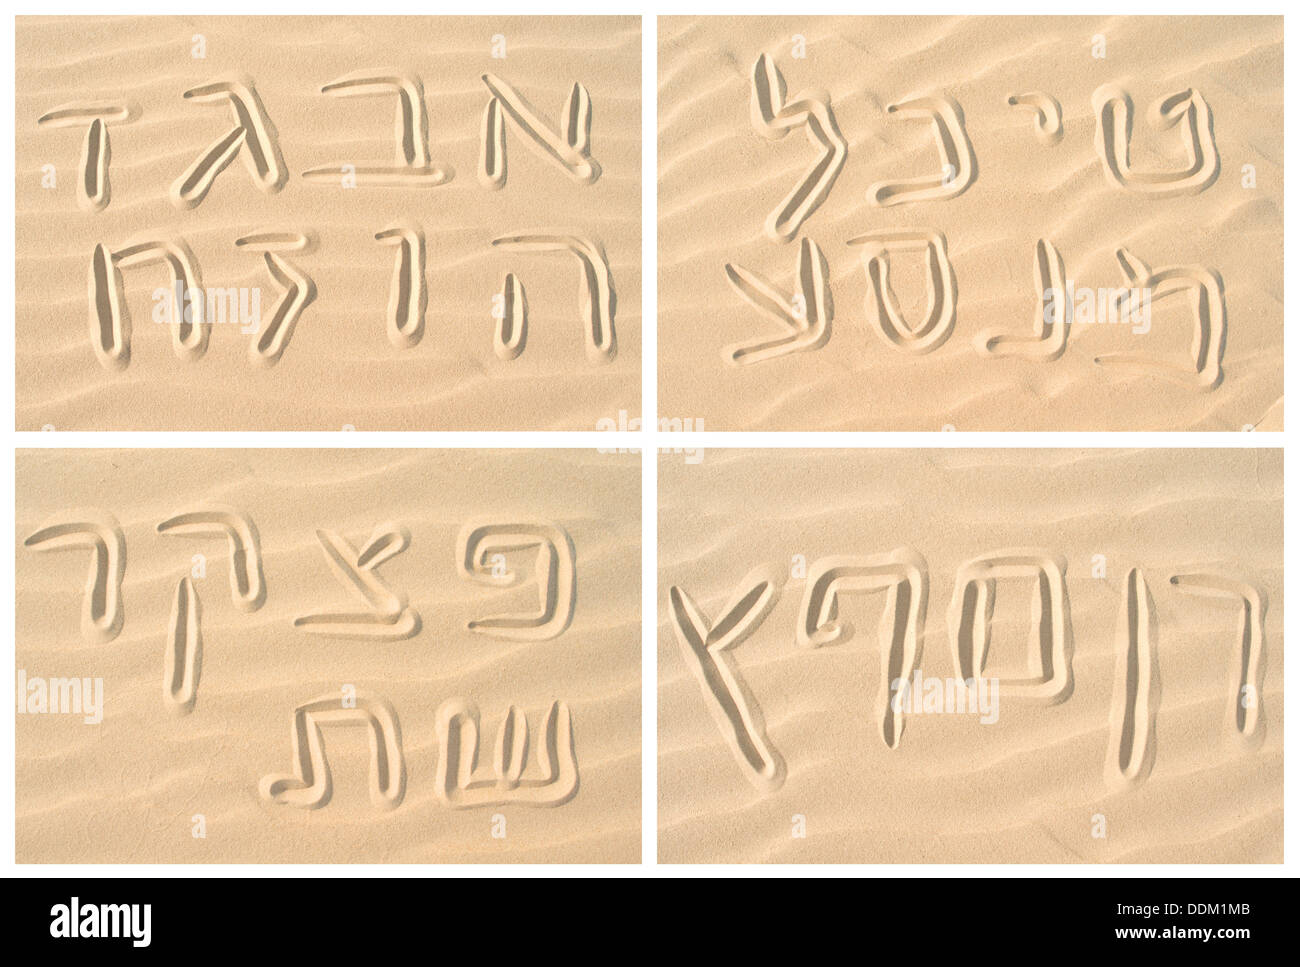 Hebrew alphabet on sand collage Stock Photo